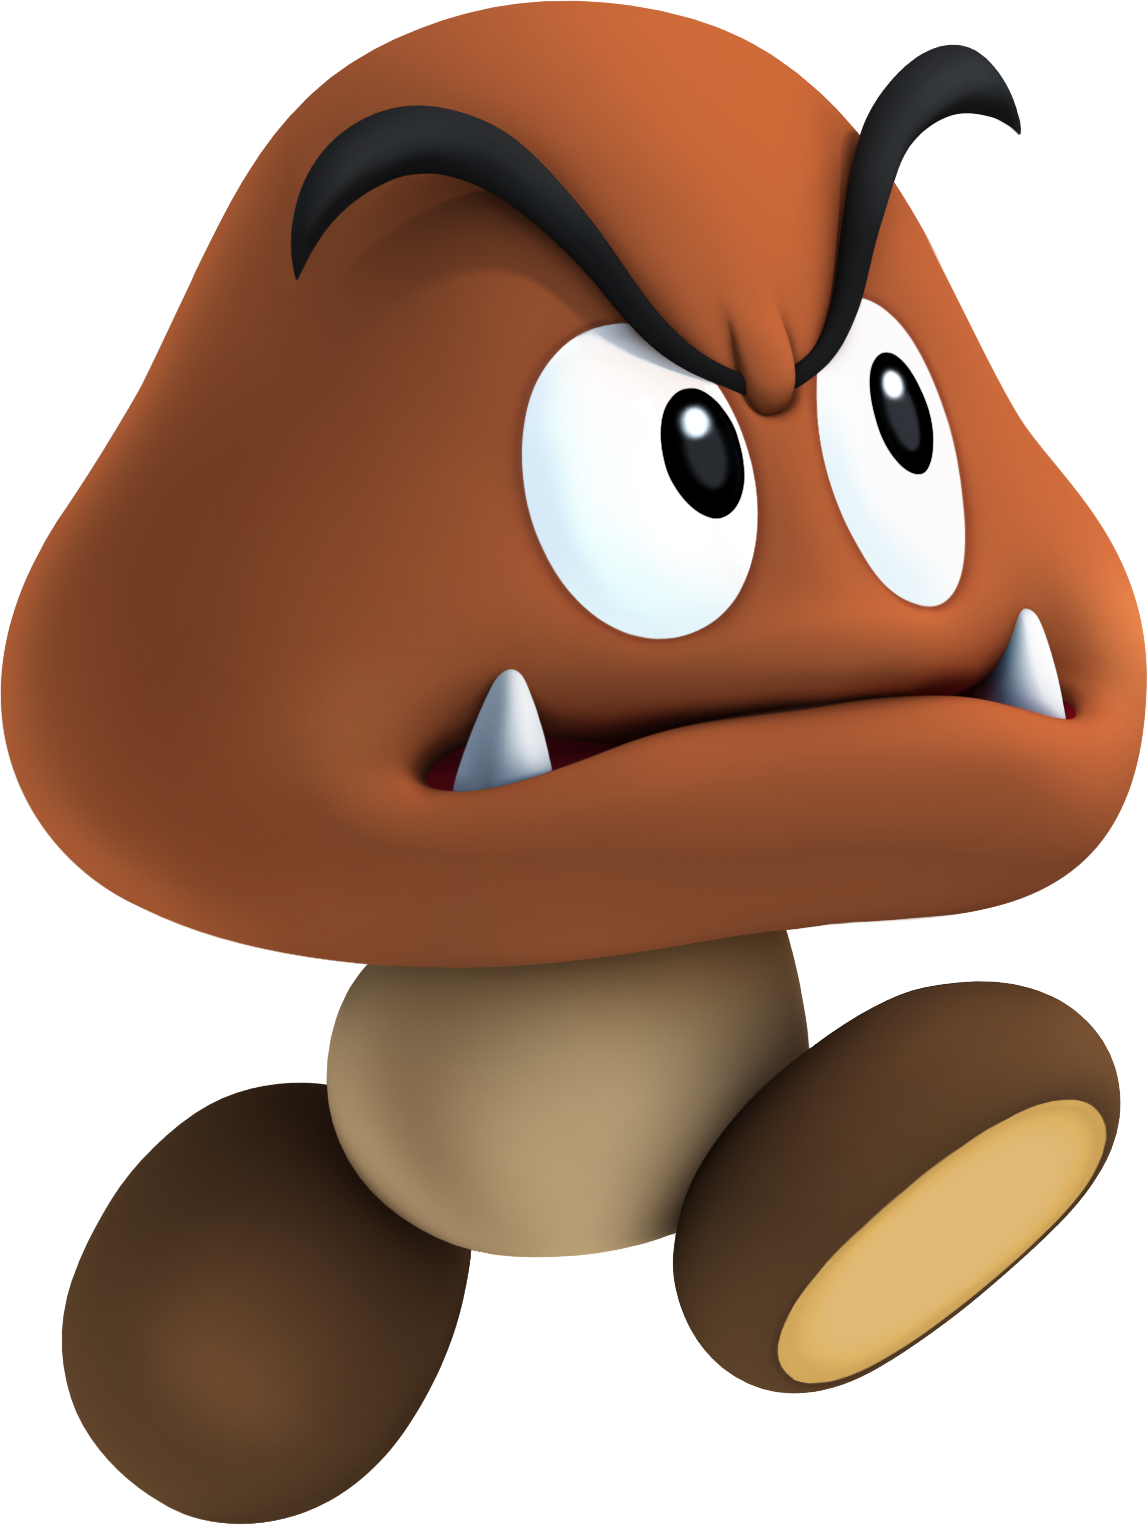 Goomba (film species) - Super Mario Wiki, the Mario encyclopedia